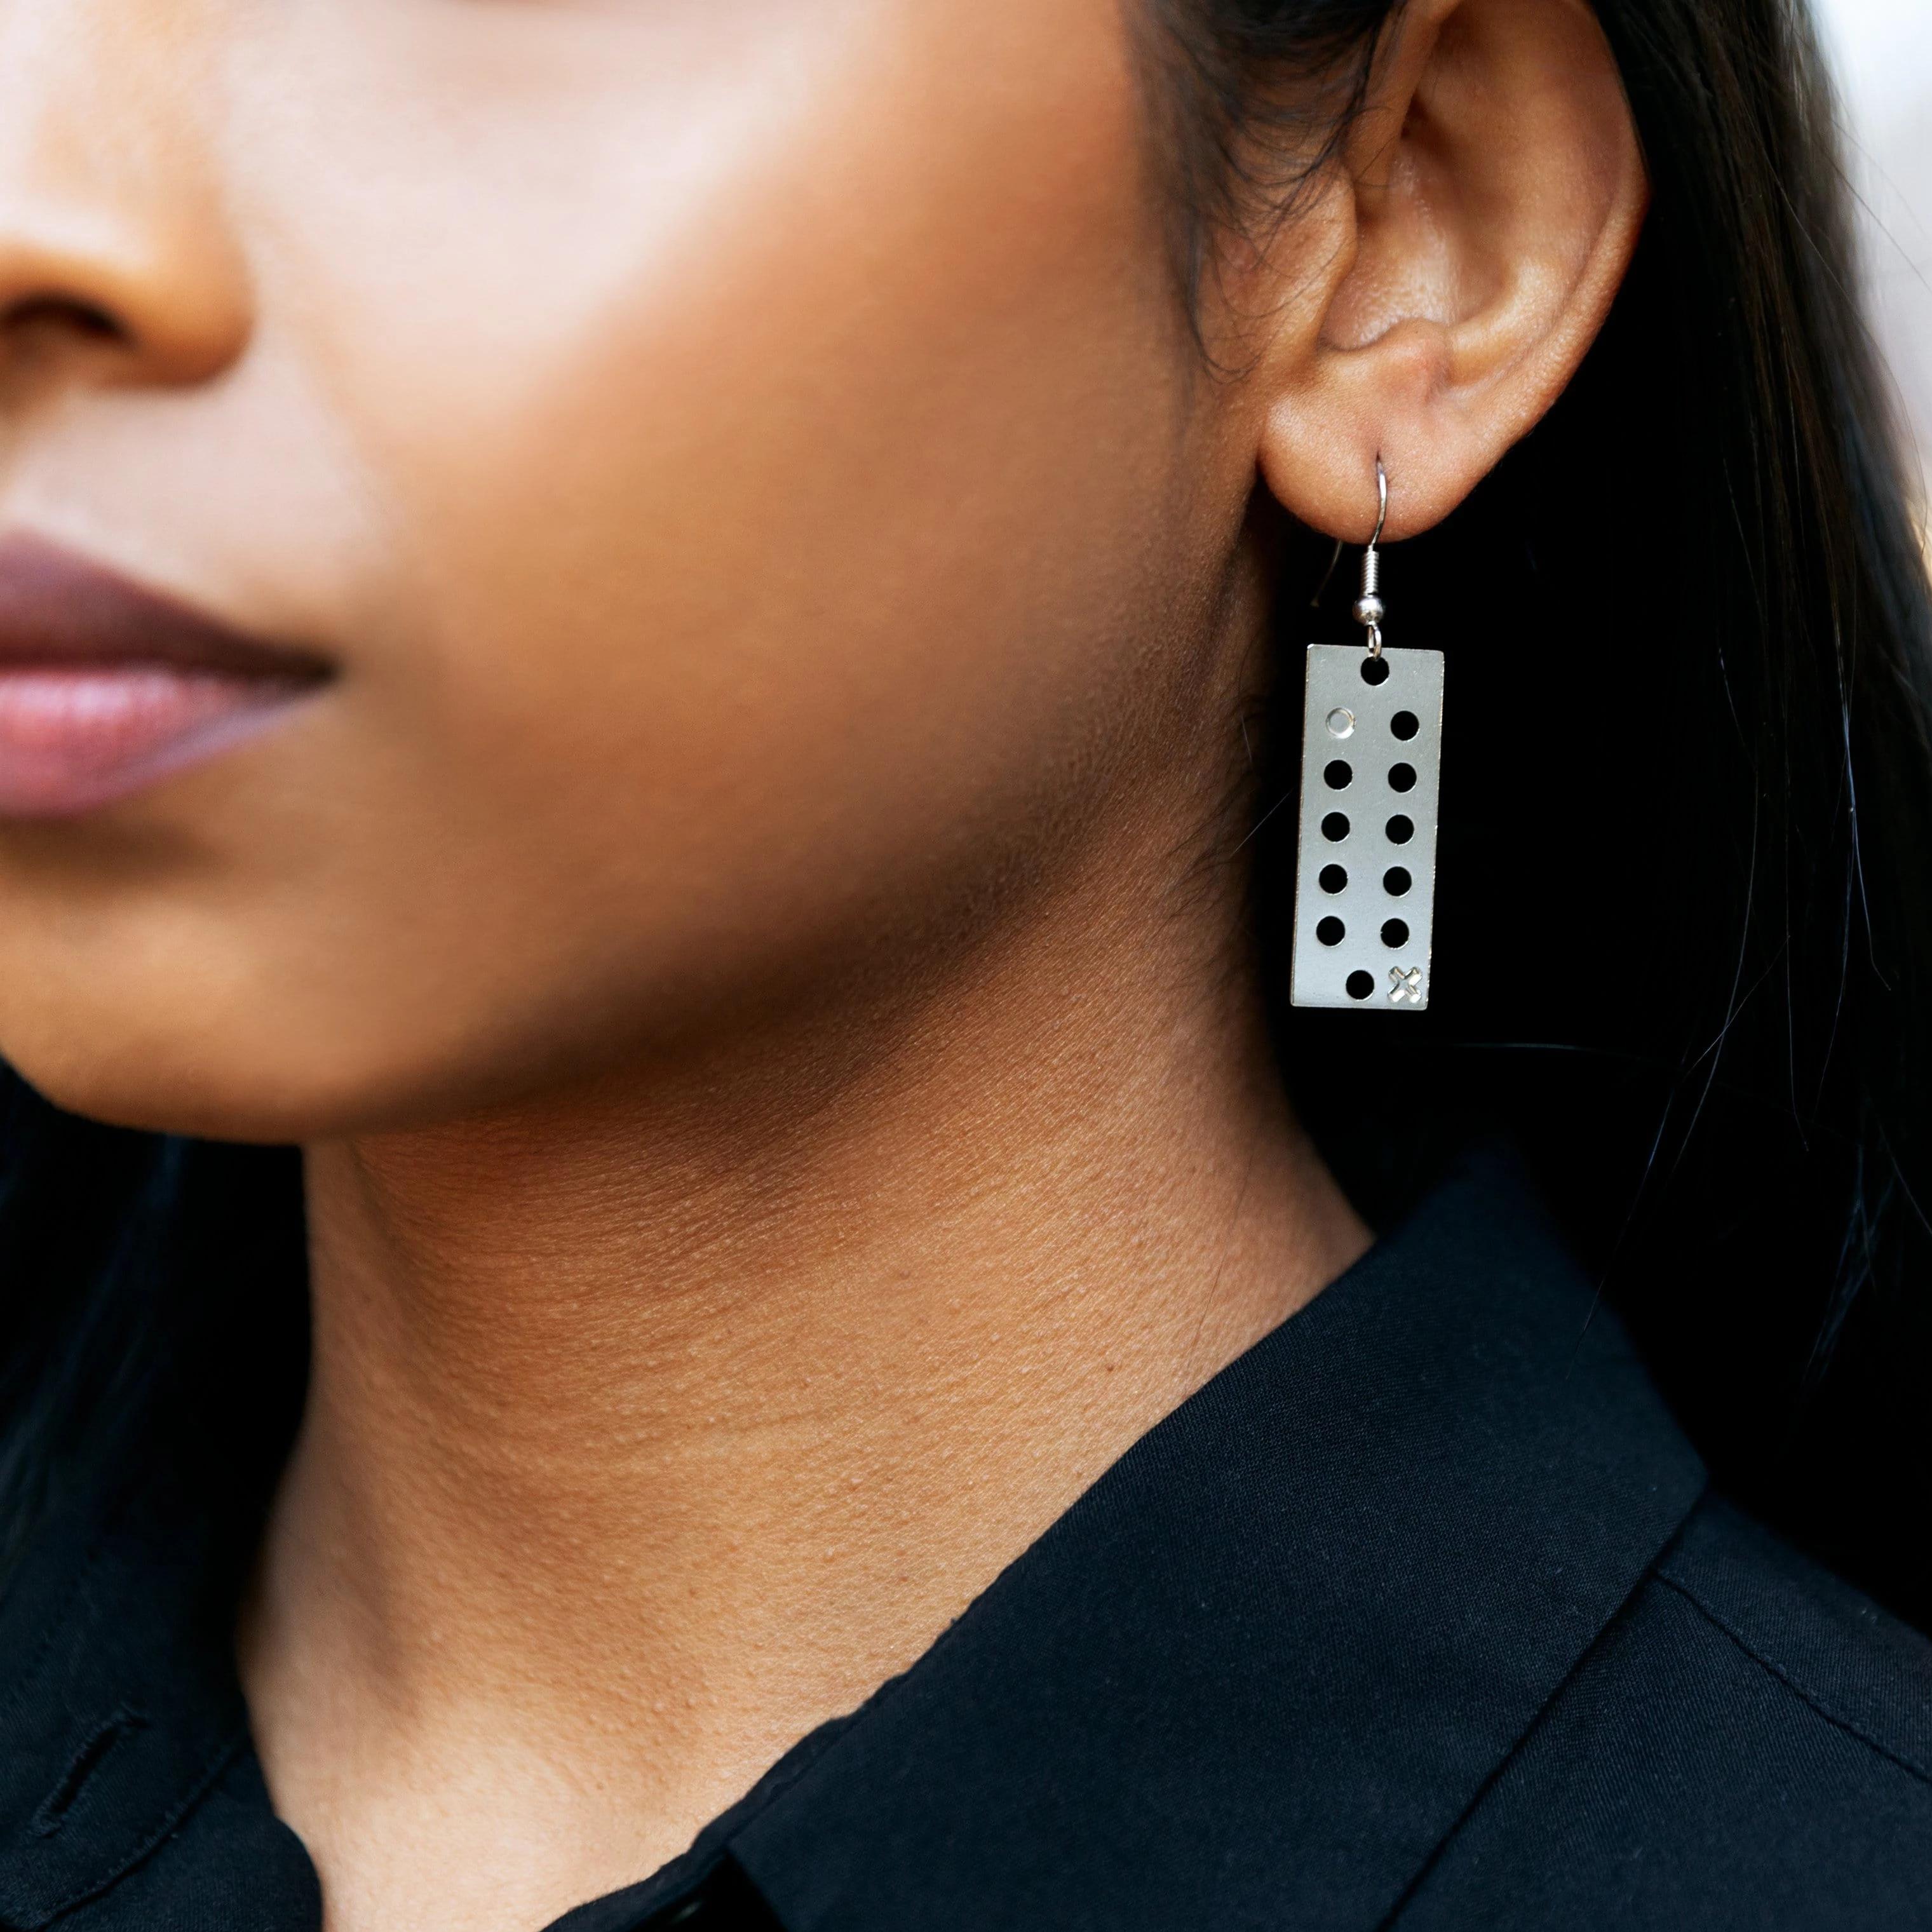 Ada Lovelace / Punchcard Earrings